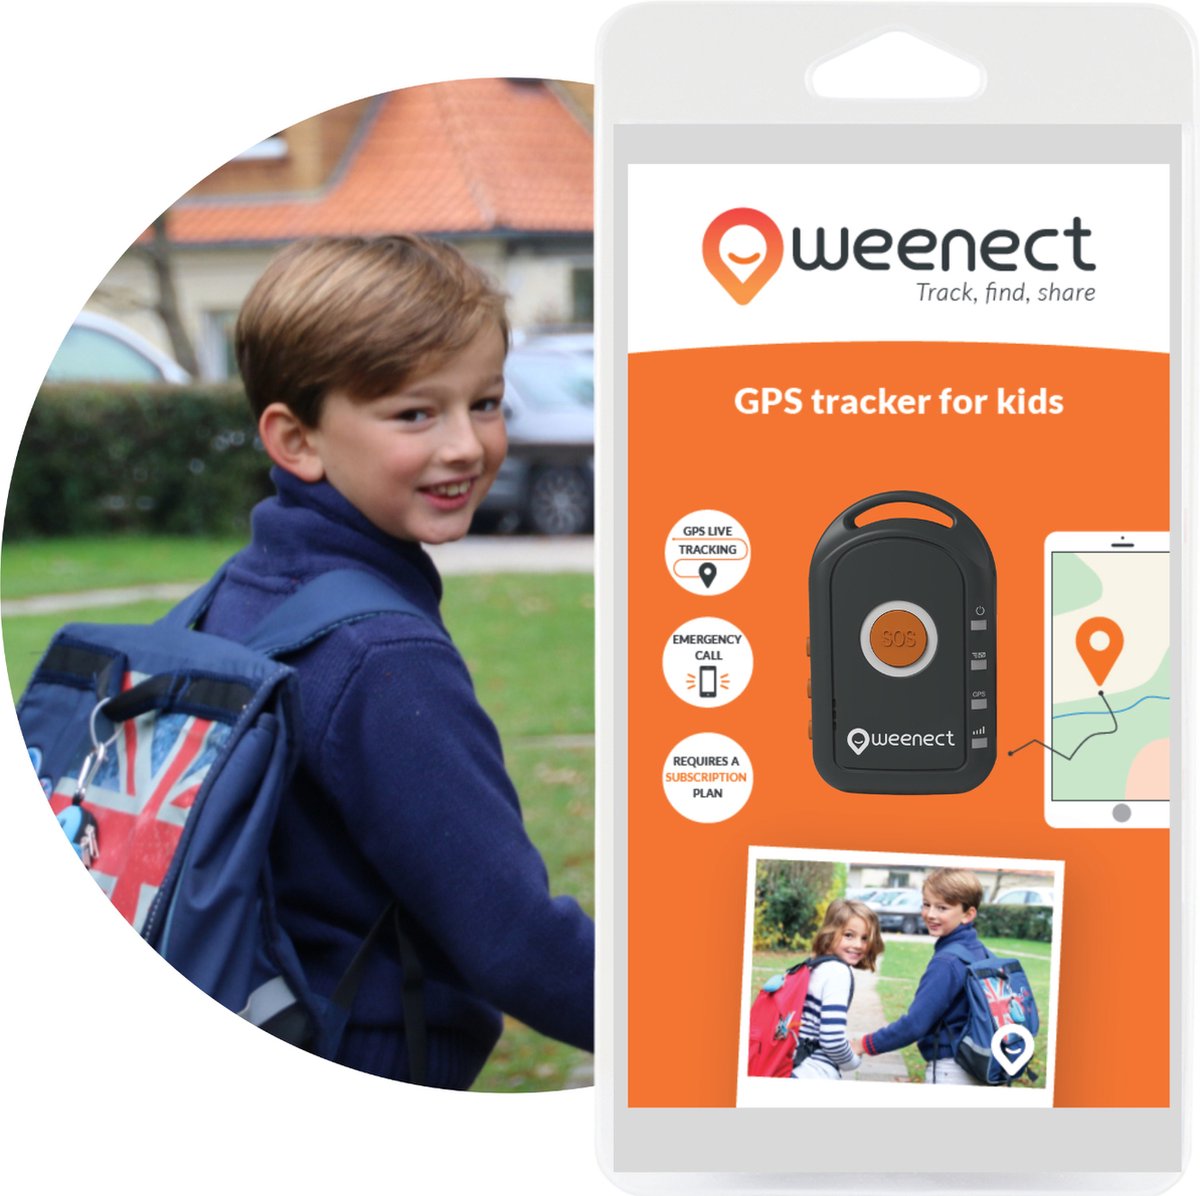 Weenect Kids, le traceur GPS connecté pour suivre son enfant dès la rentrée  - Les Numériques